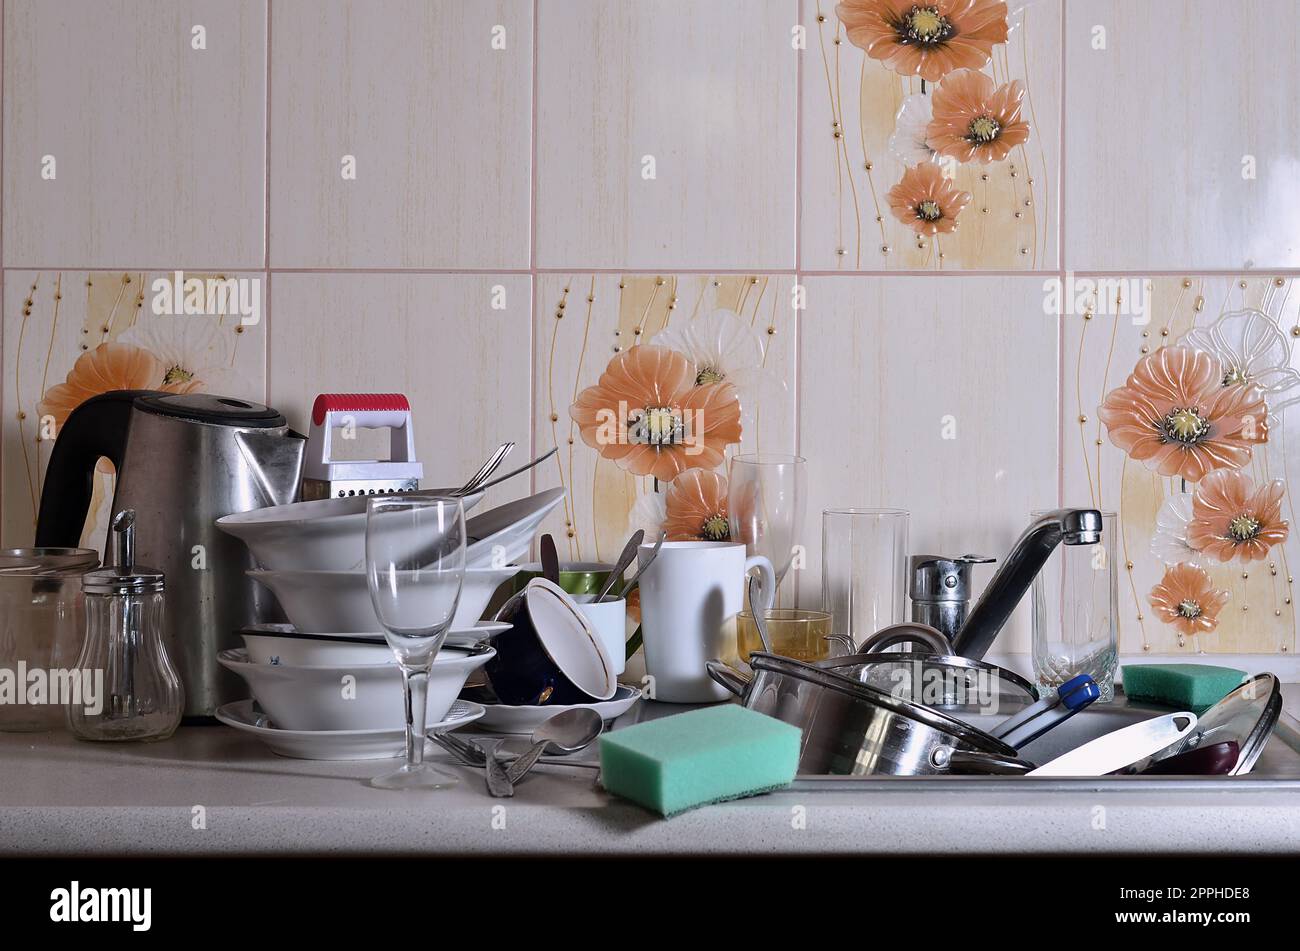 Ein riesiger Haufen ungewaschenes Geschirr im Spülbecken und auf der Arbeitsfläche Stockfoto